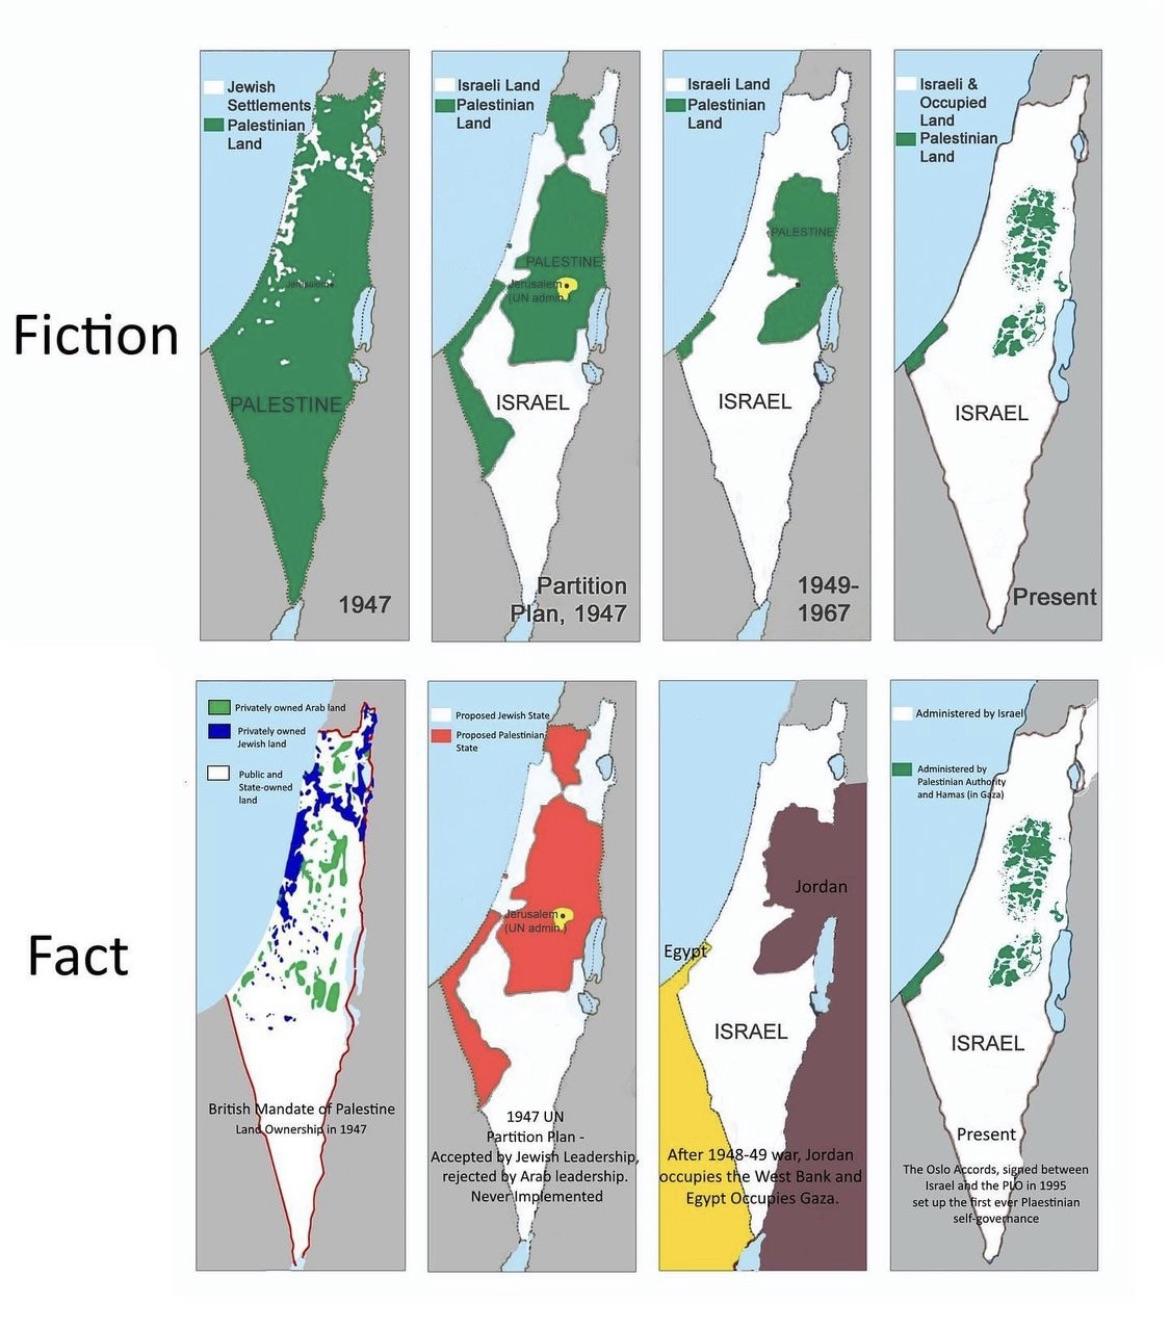 Ekspansja terytorialna Izraela w latach 1947-1995, etapy polityczne